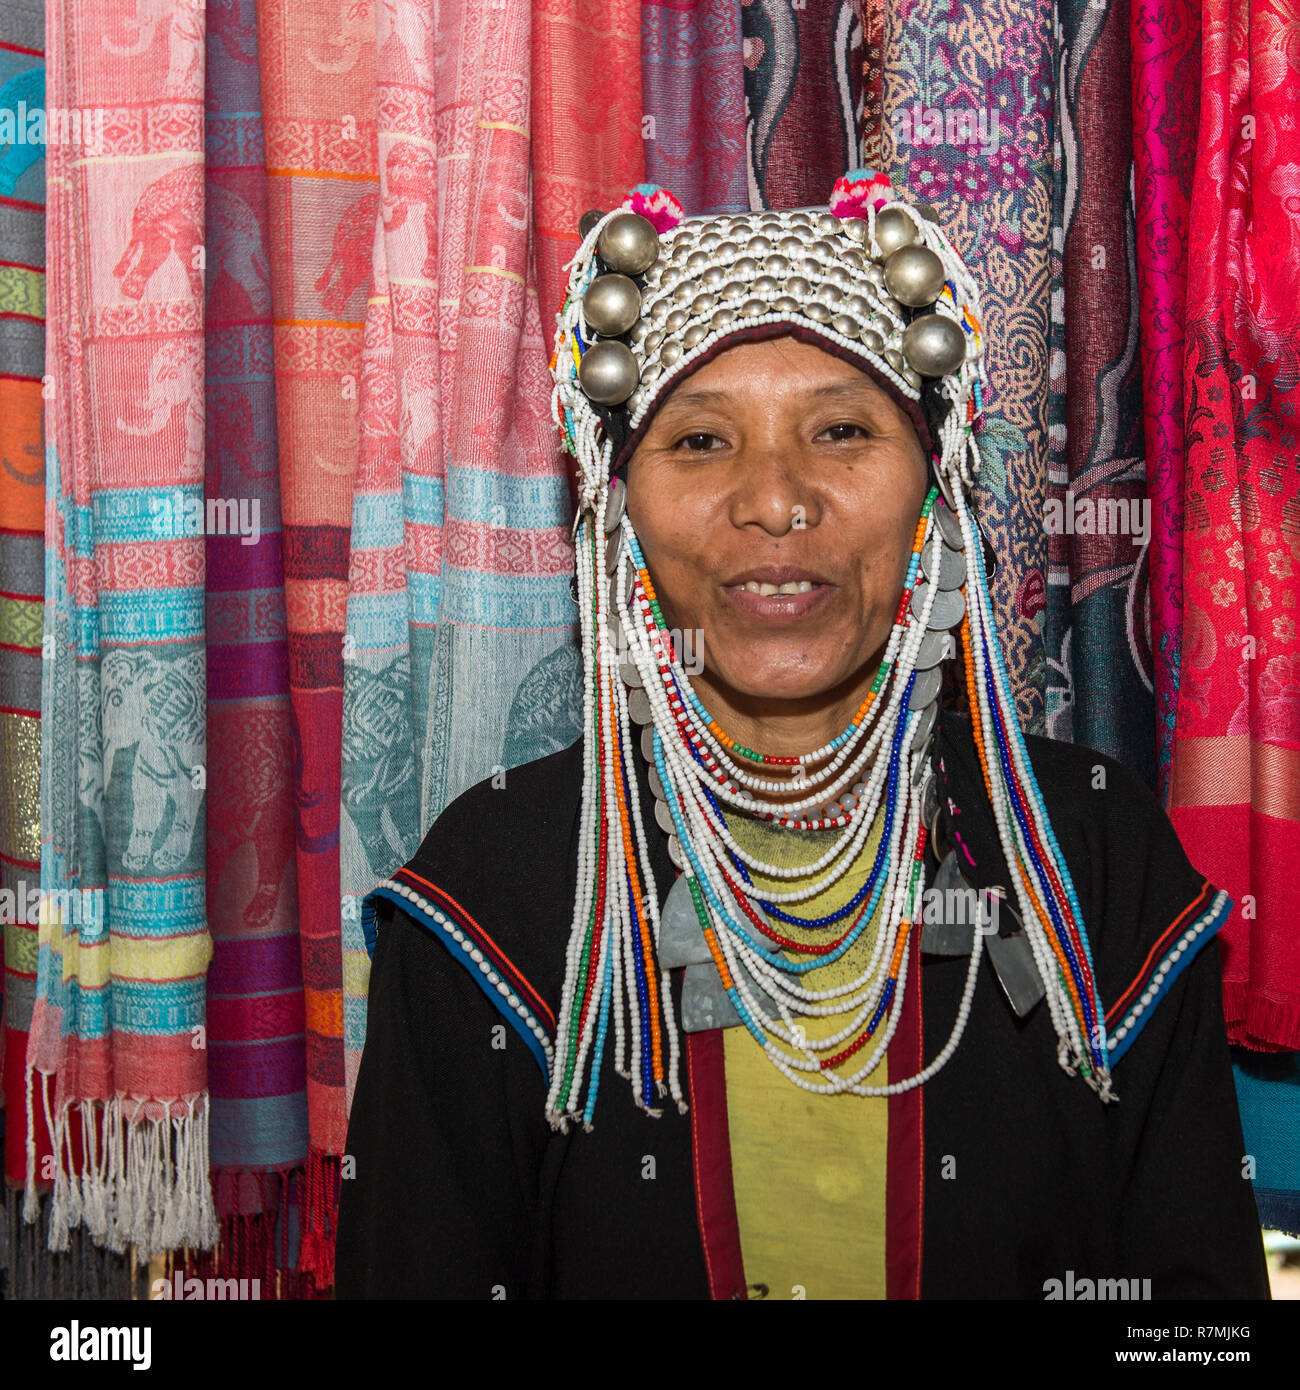 Le port de vêtements traditionnels Akha tribeswoman avec une coiffe ornée, Chiang Mai, Thaïlande Banque D'Images